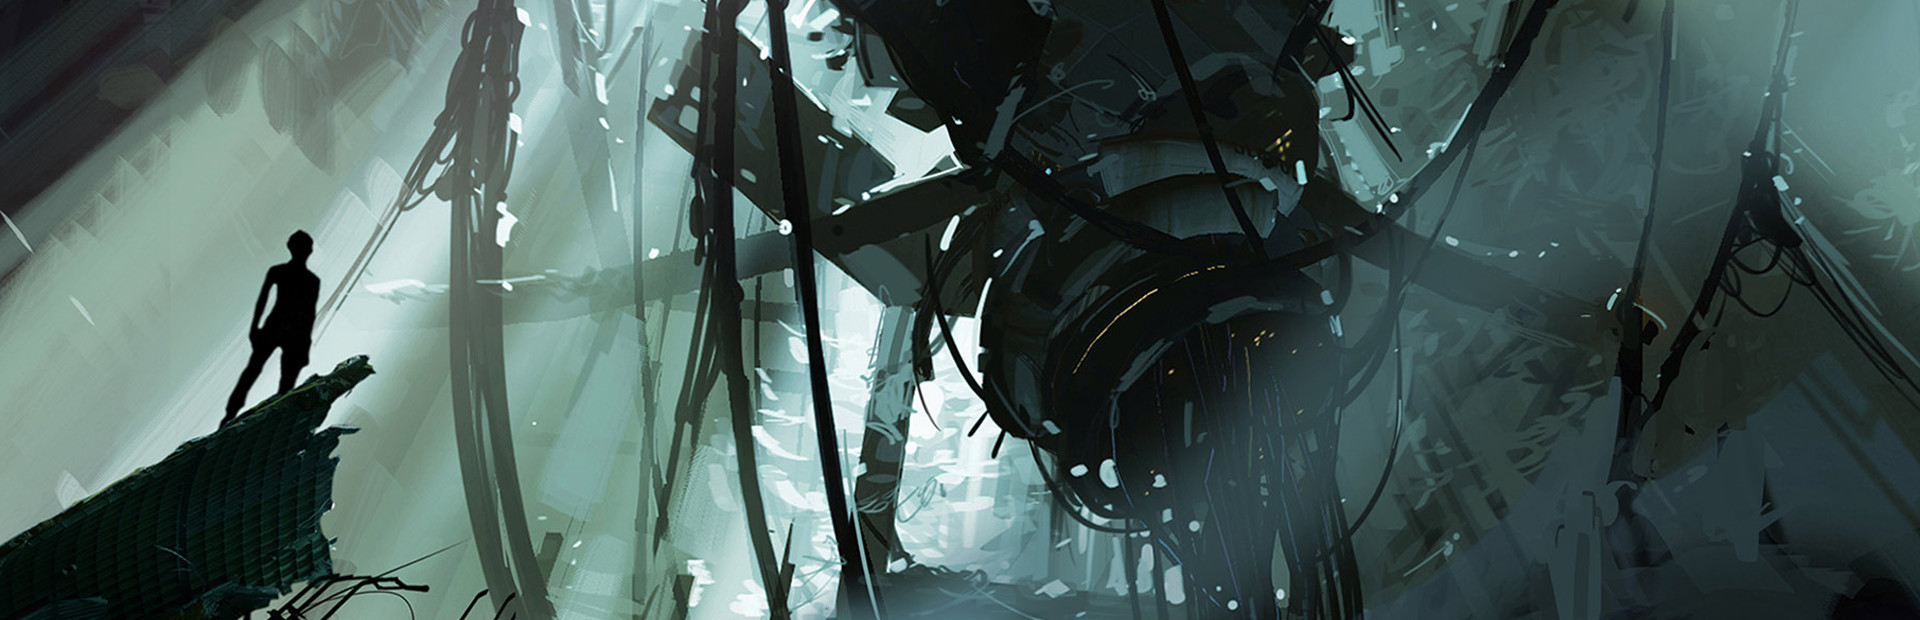 Portal 2 cover image